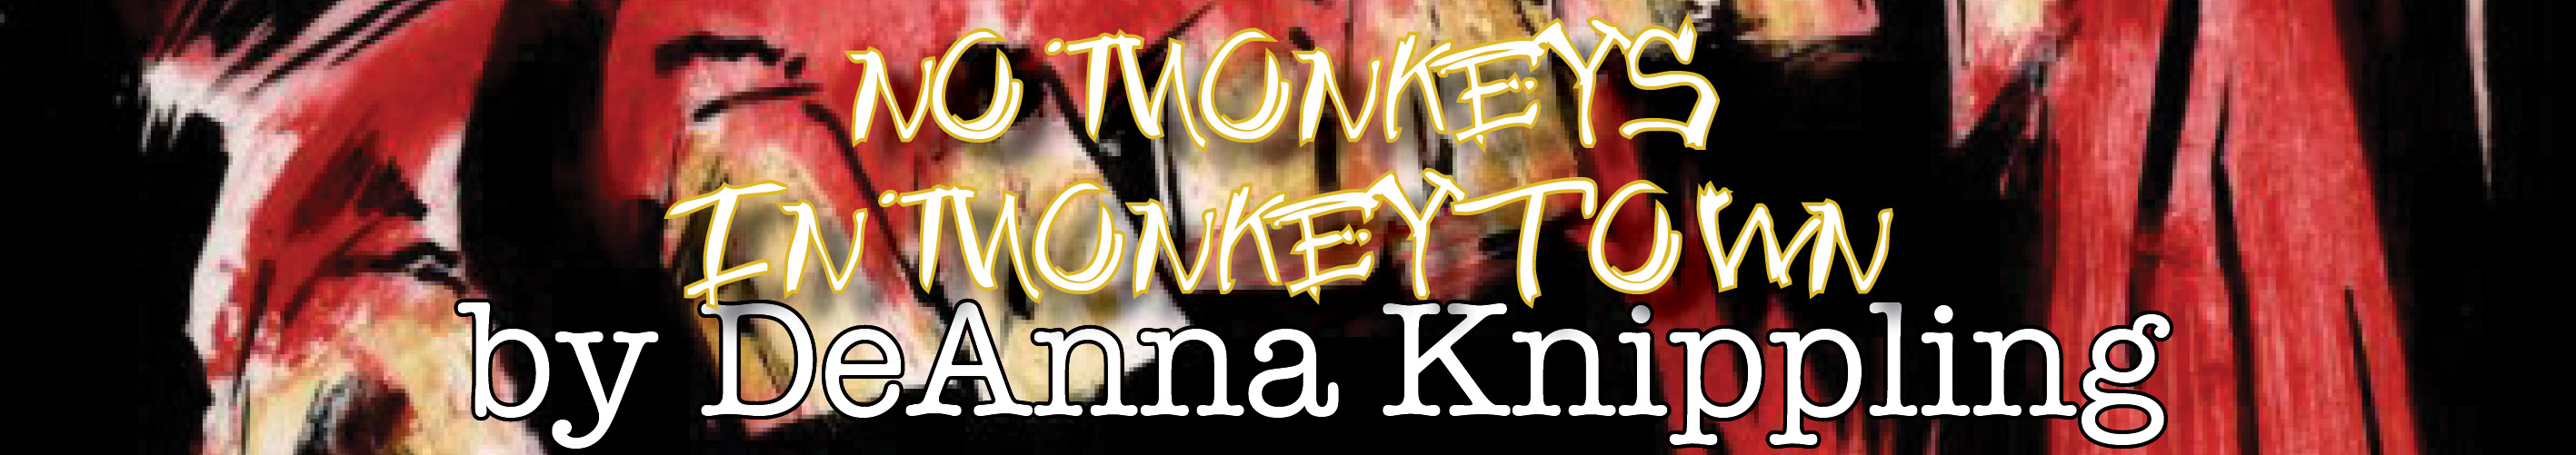 no monkeys in monkeytown